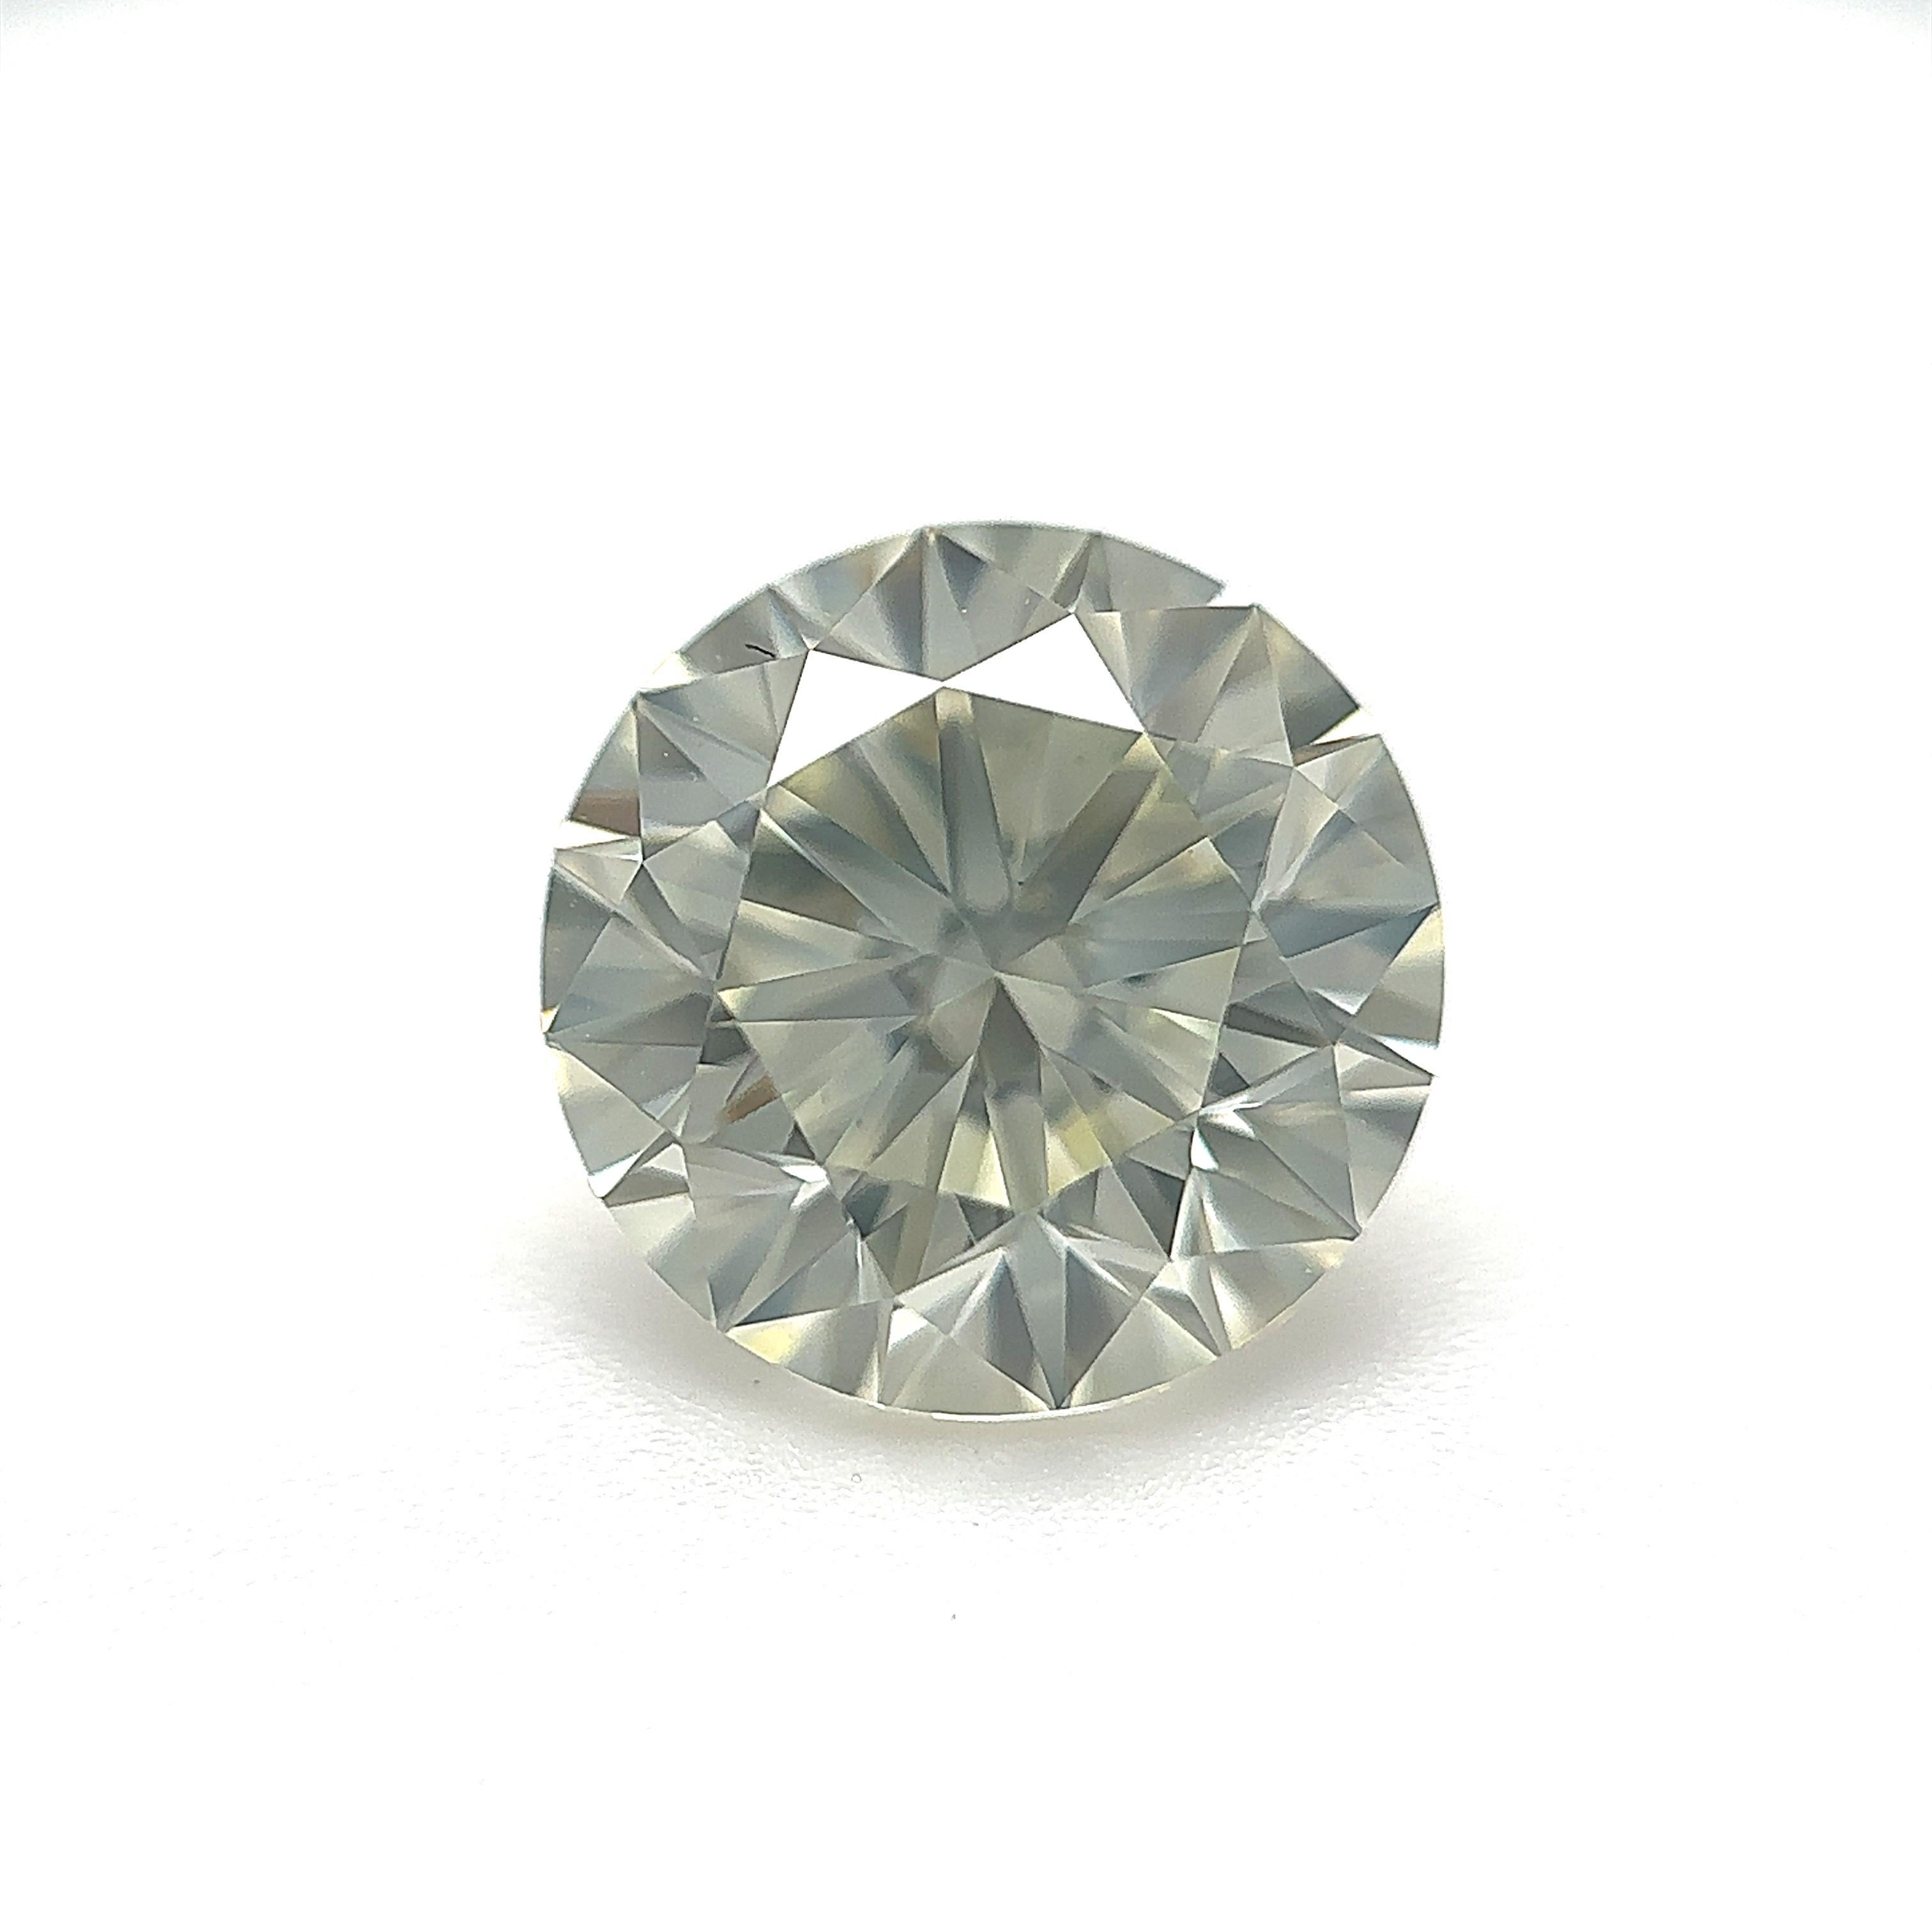 GIA Certified 2.84 Carat Round Brilliant Natural Diamond Loose Stone (Customization Option)

Couleur : A&M
Clarté : VVS2

Idéal pour les bagues de fiançailles, les alliances, les colliers et les boucles d'oreilles en diamant. Contactez-nous pour